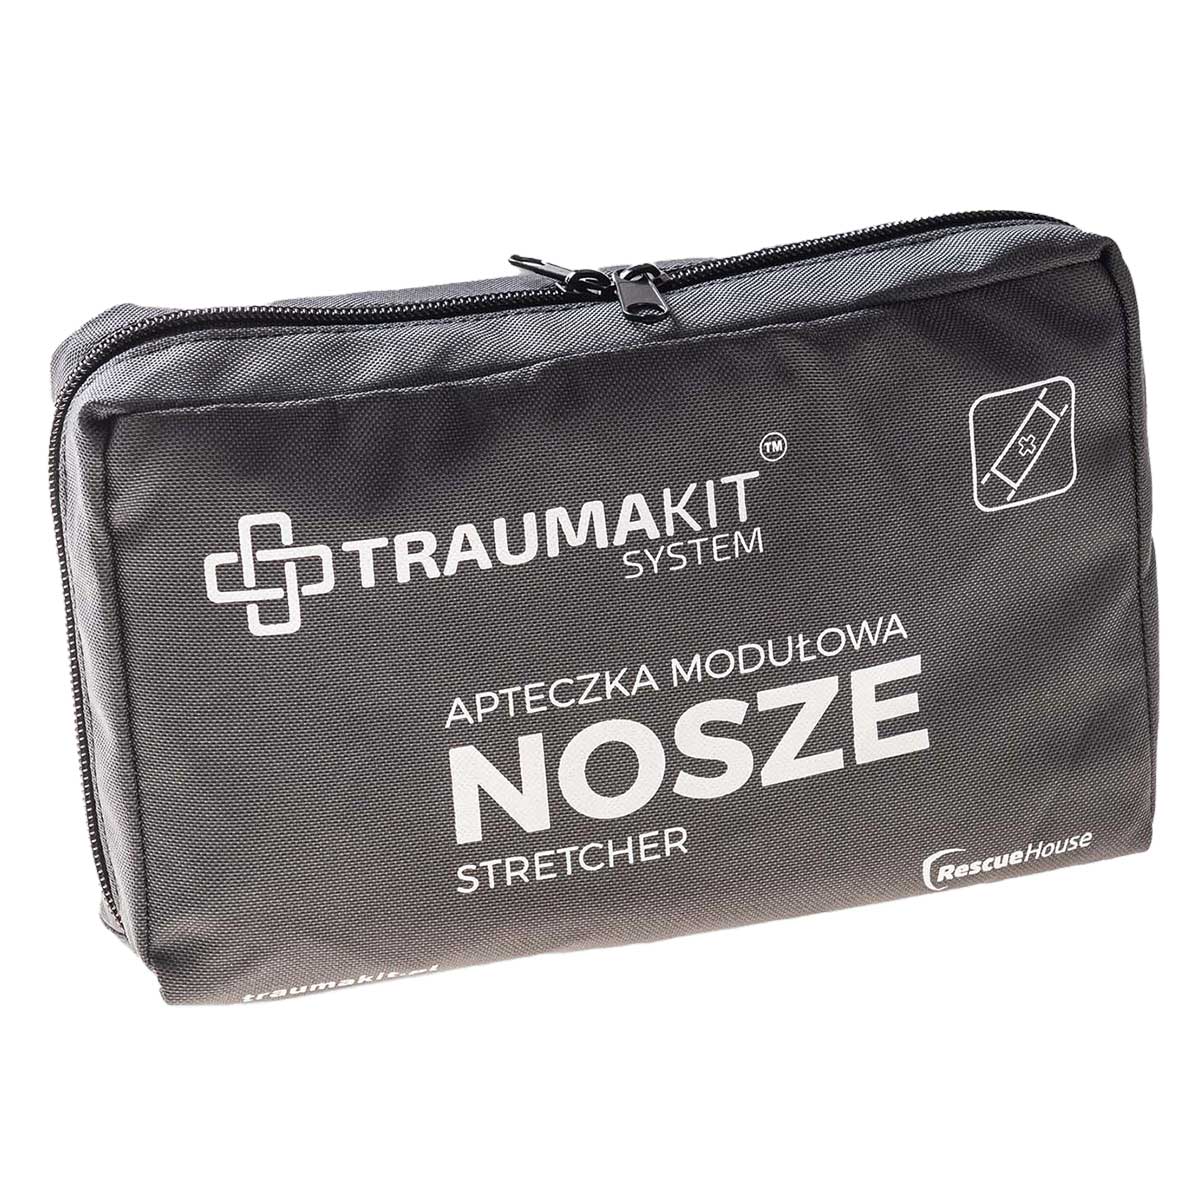 Apteczka modułowa AedMax Trauma Kit - Nosze